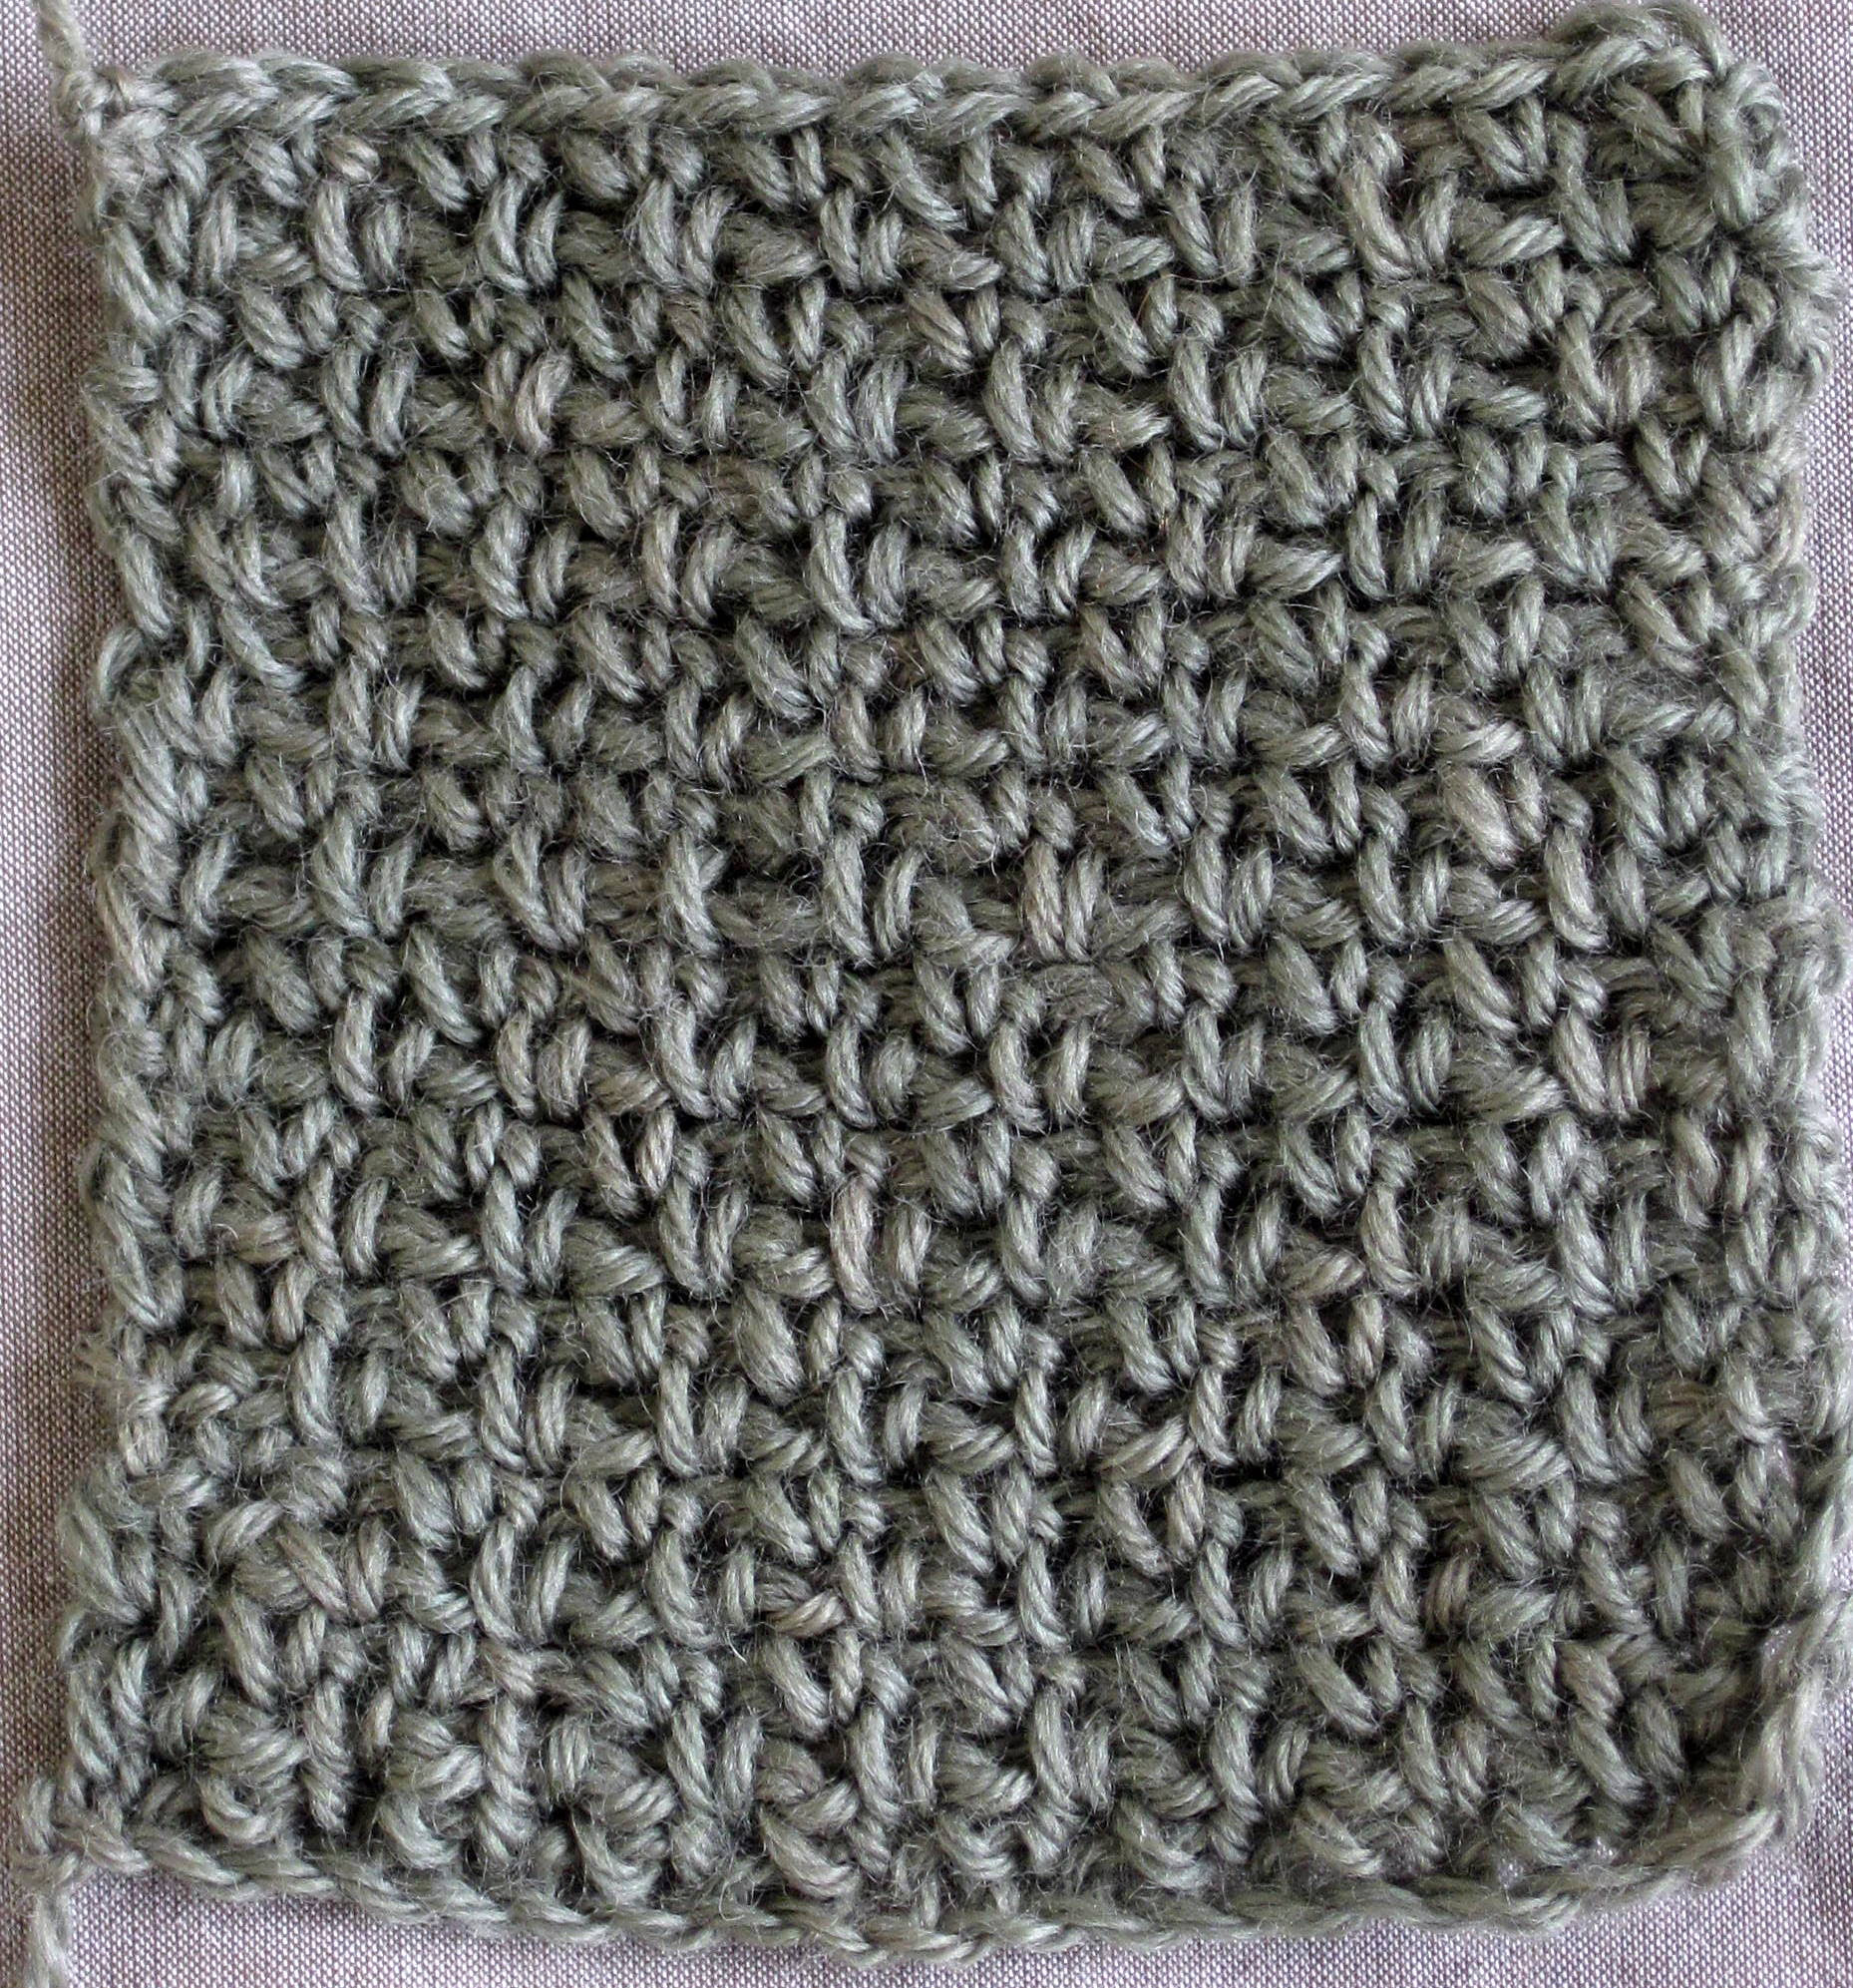 Just a Stitch Away: Crochet Stitch Instruction - Woven Stitch